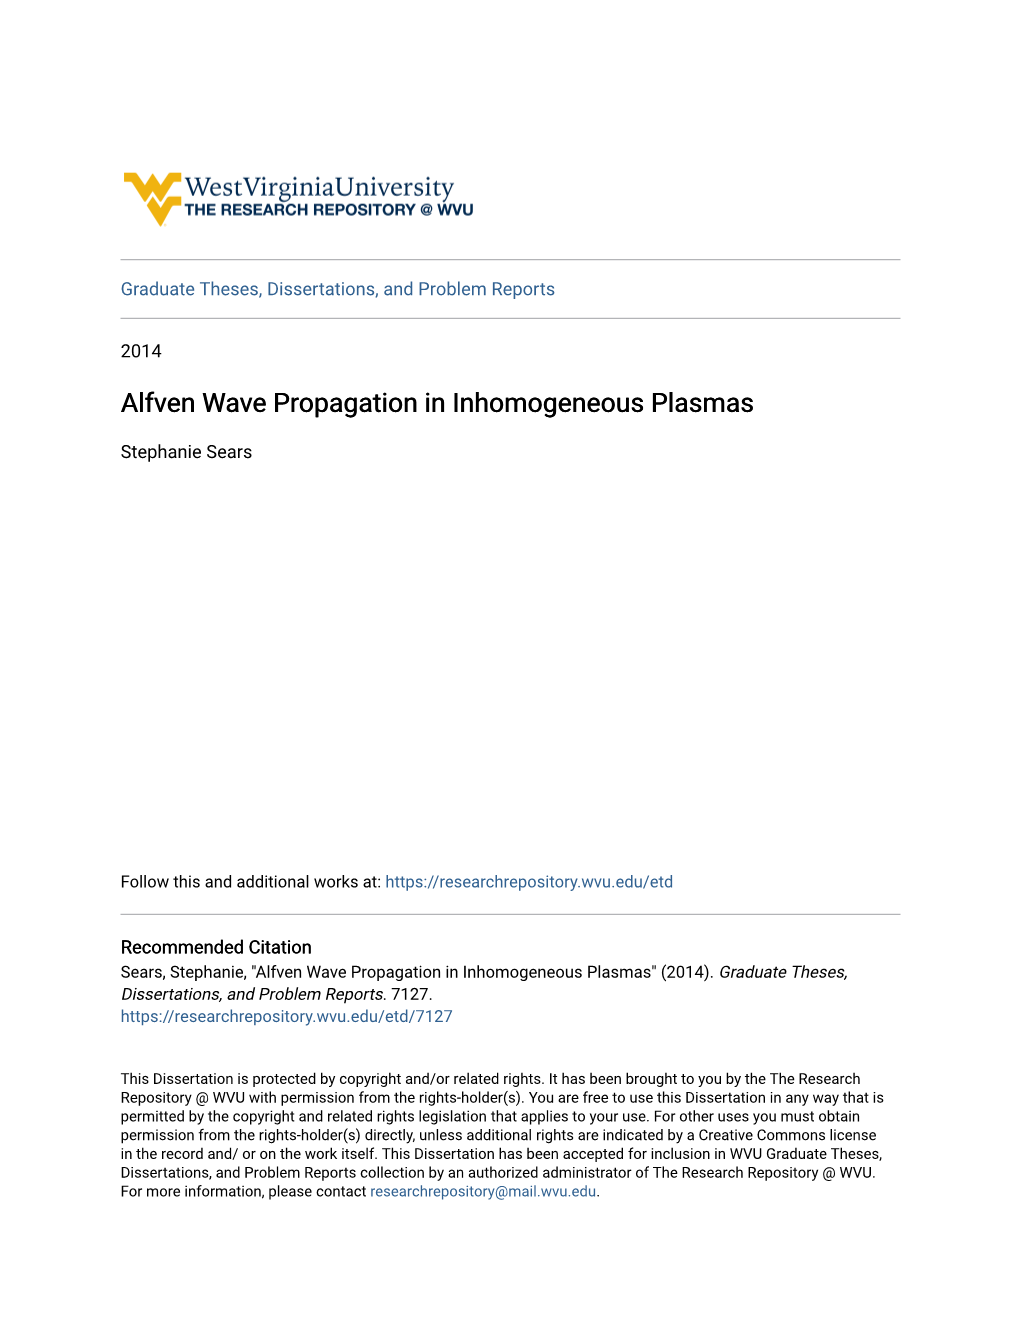 Alfven Wave Propagation in Inhomogeneous Plasmas